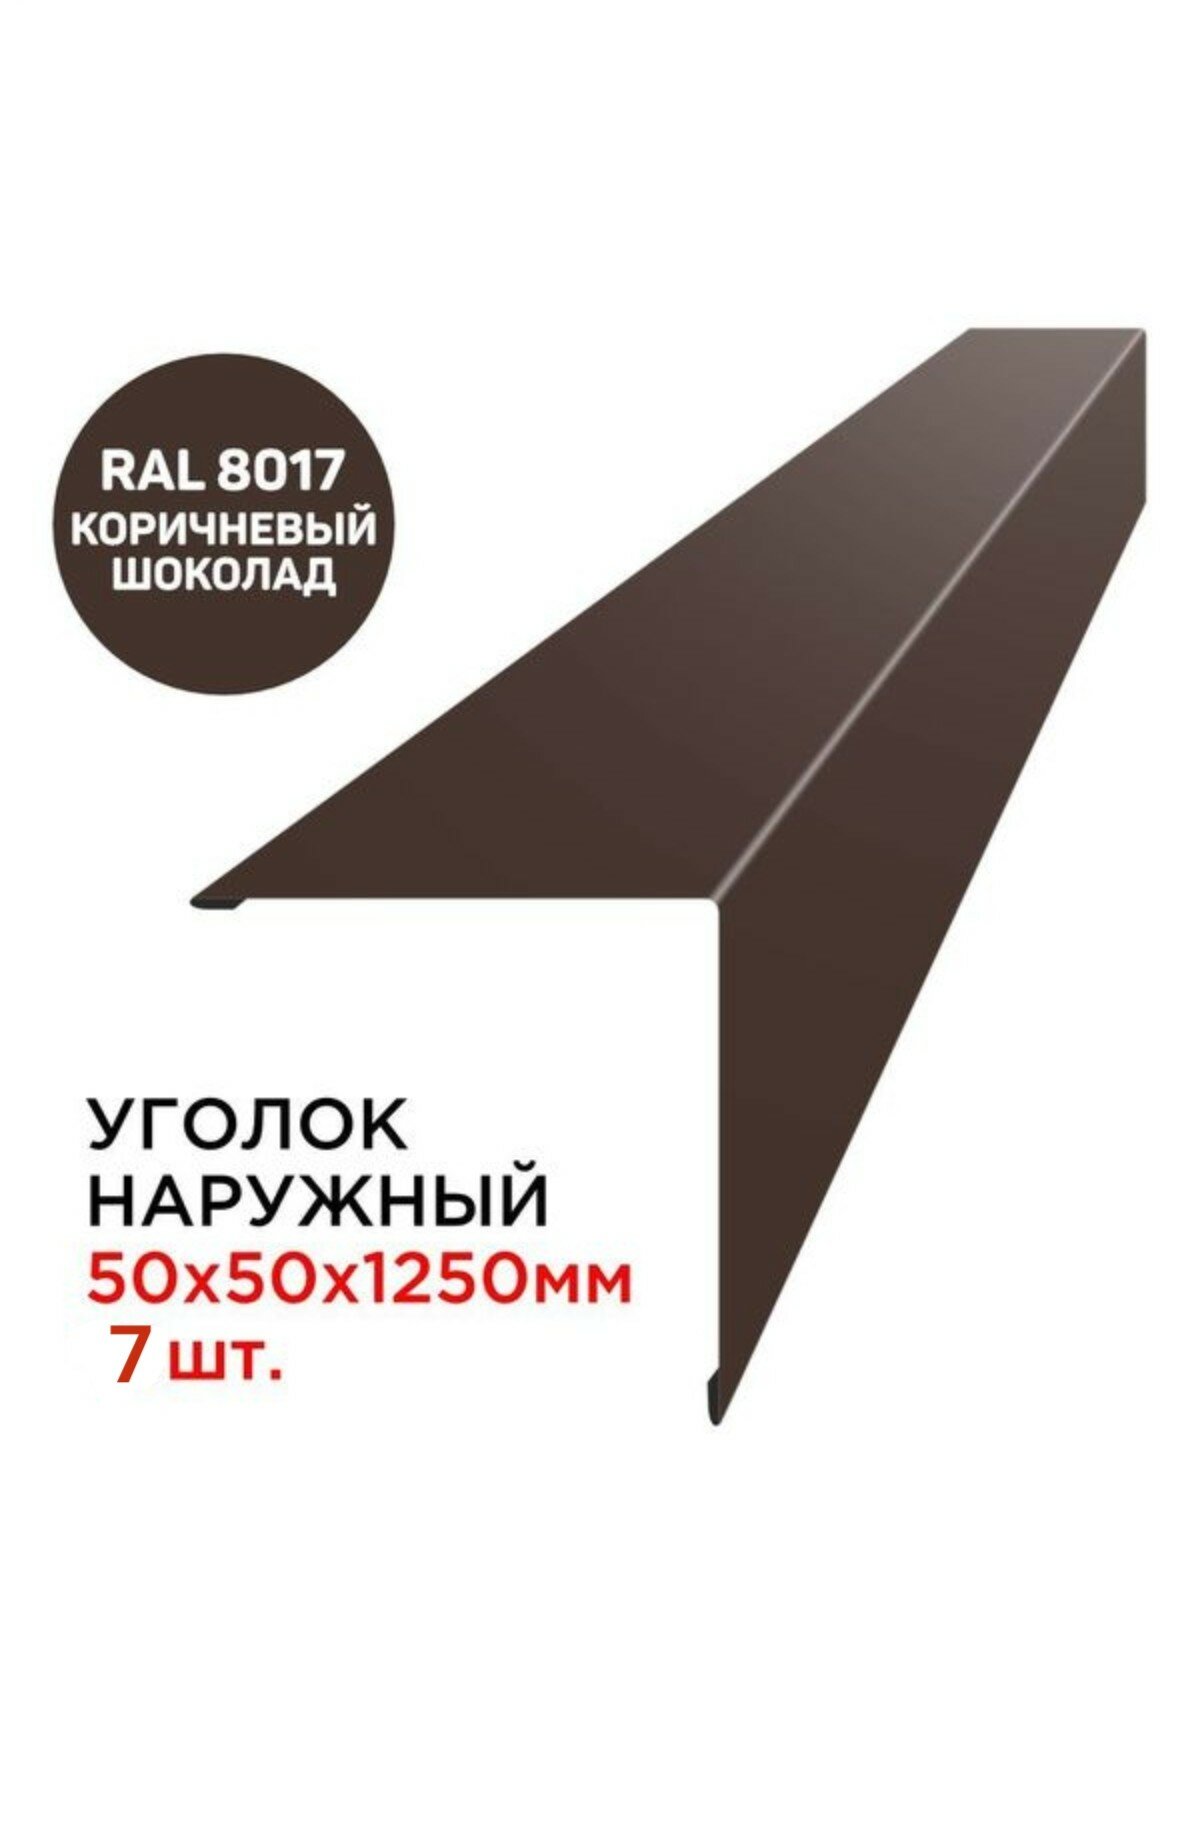 Наружные металлические уголки 50x50x125 мм, RAL 8017, коричневый шоколад, 7 штук